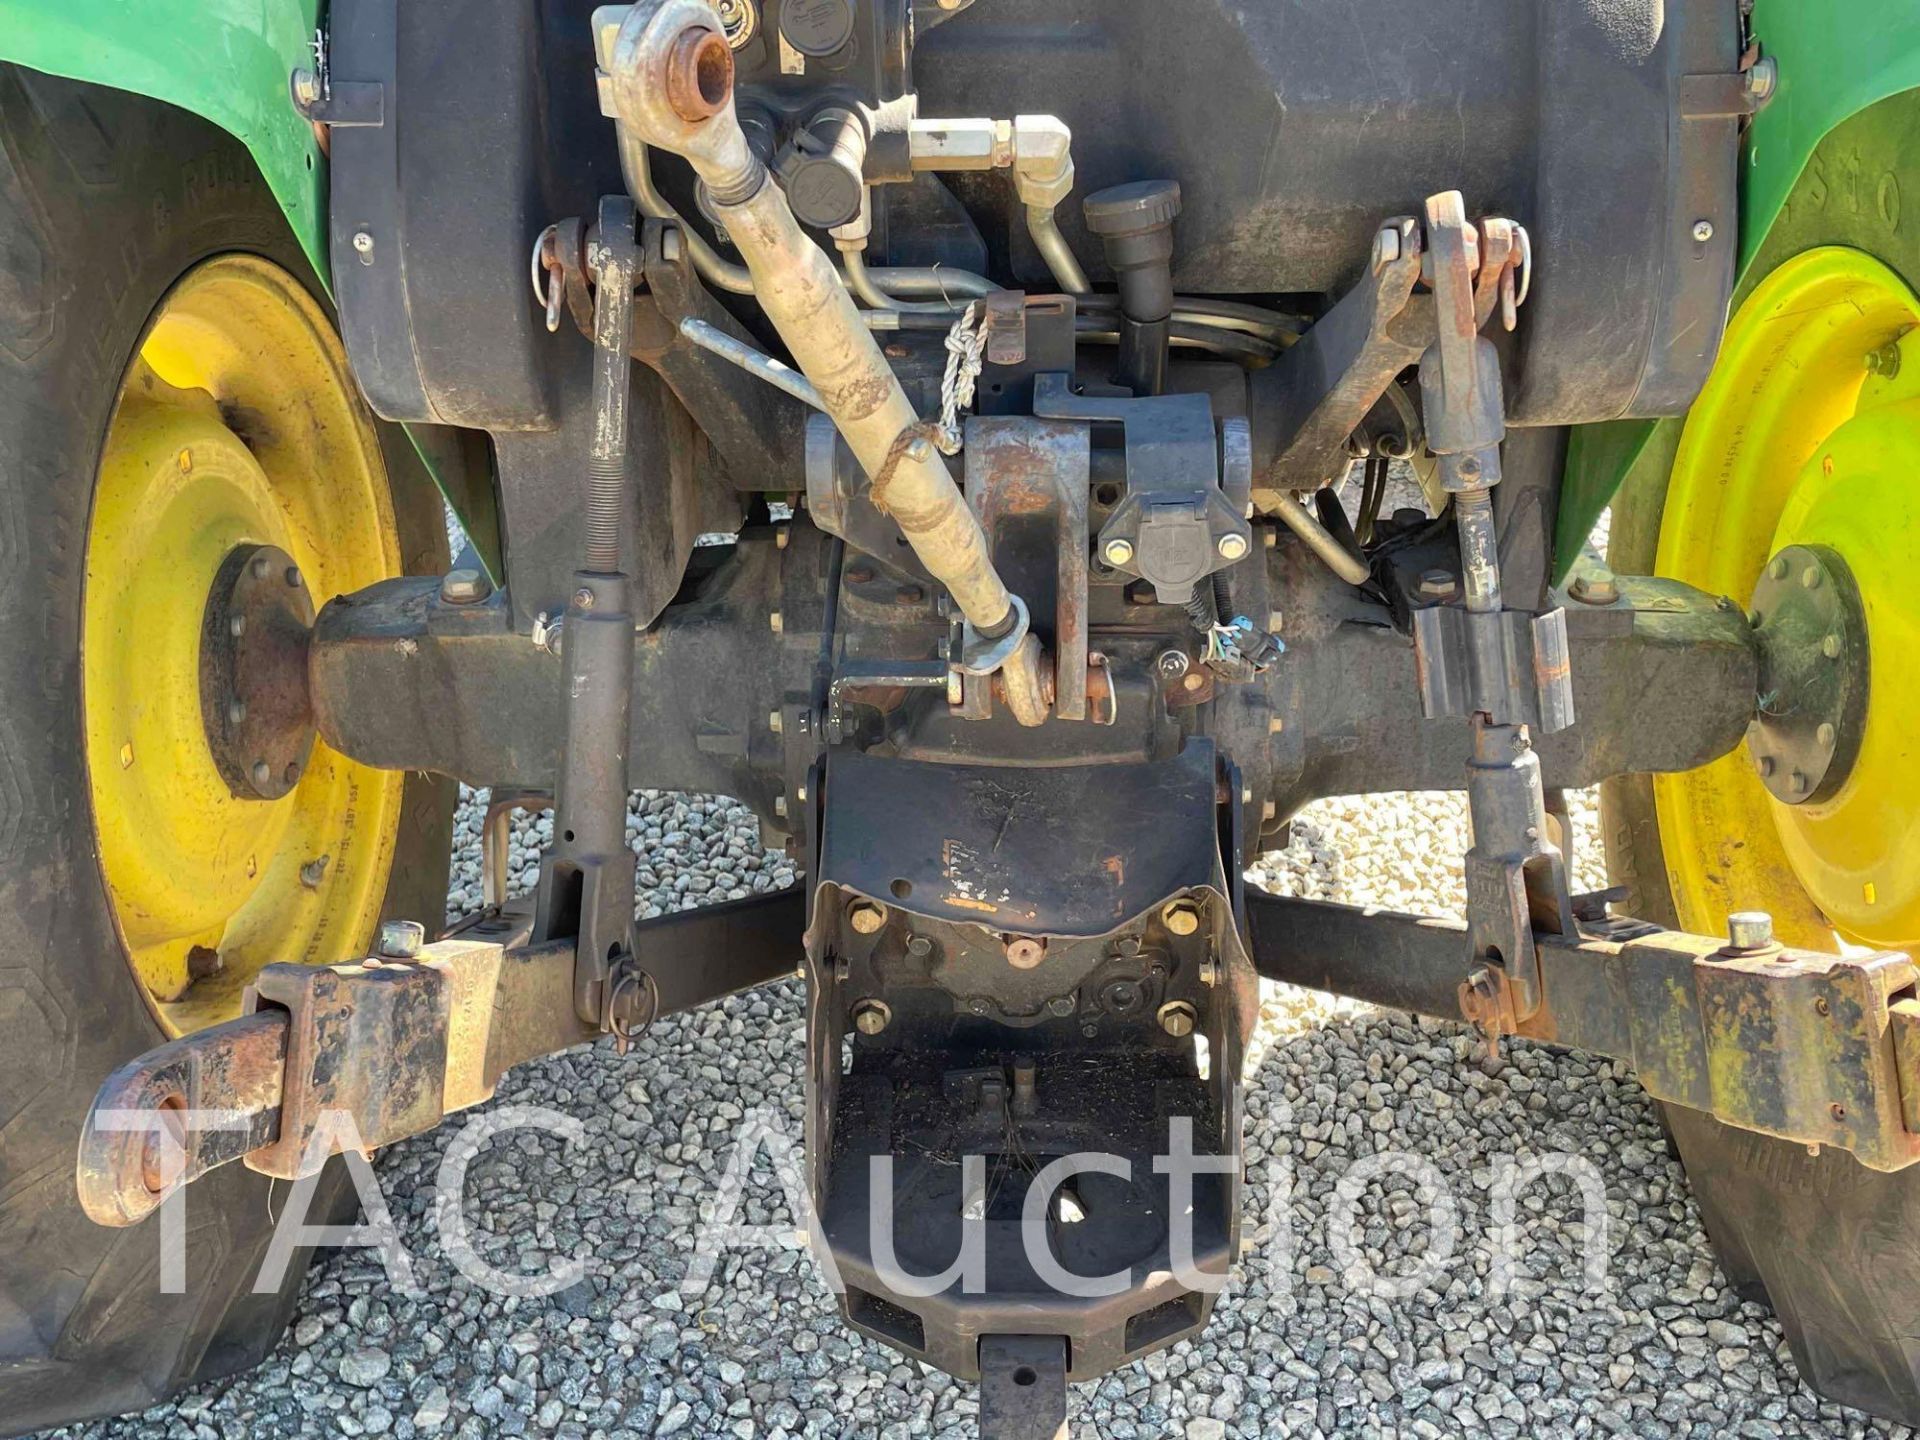 John Deere 5325 Tractor W/ Front End Loader - Image 26 of 41